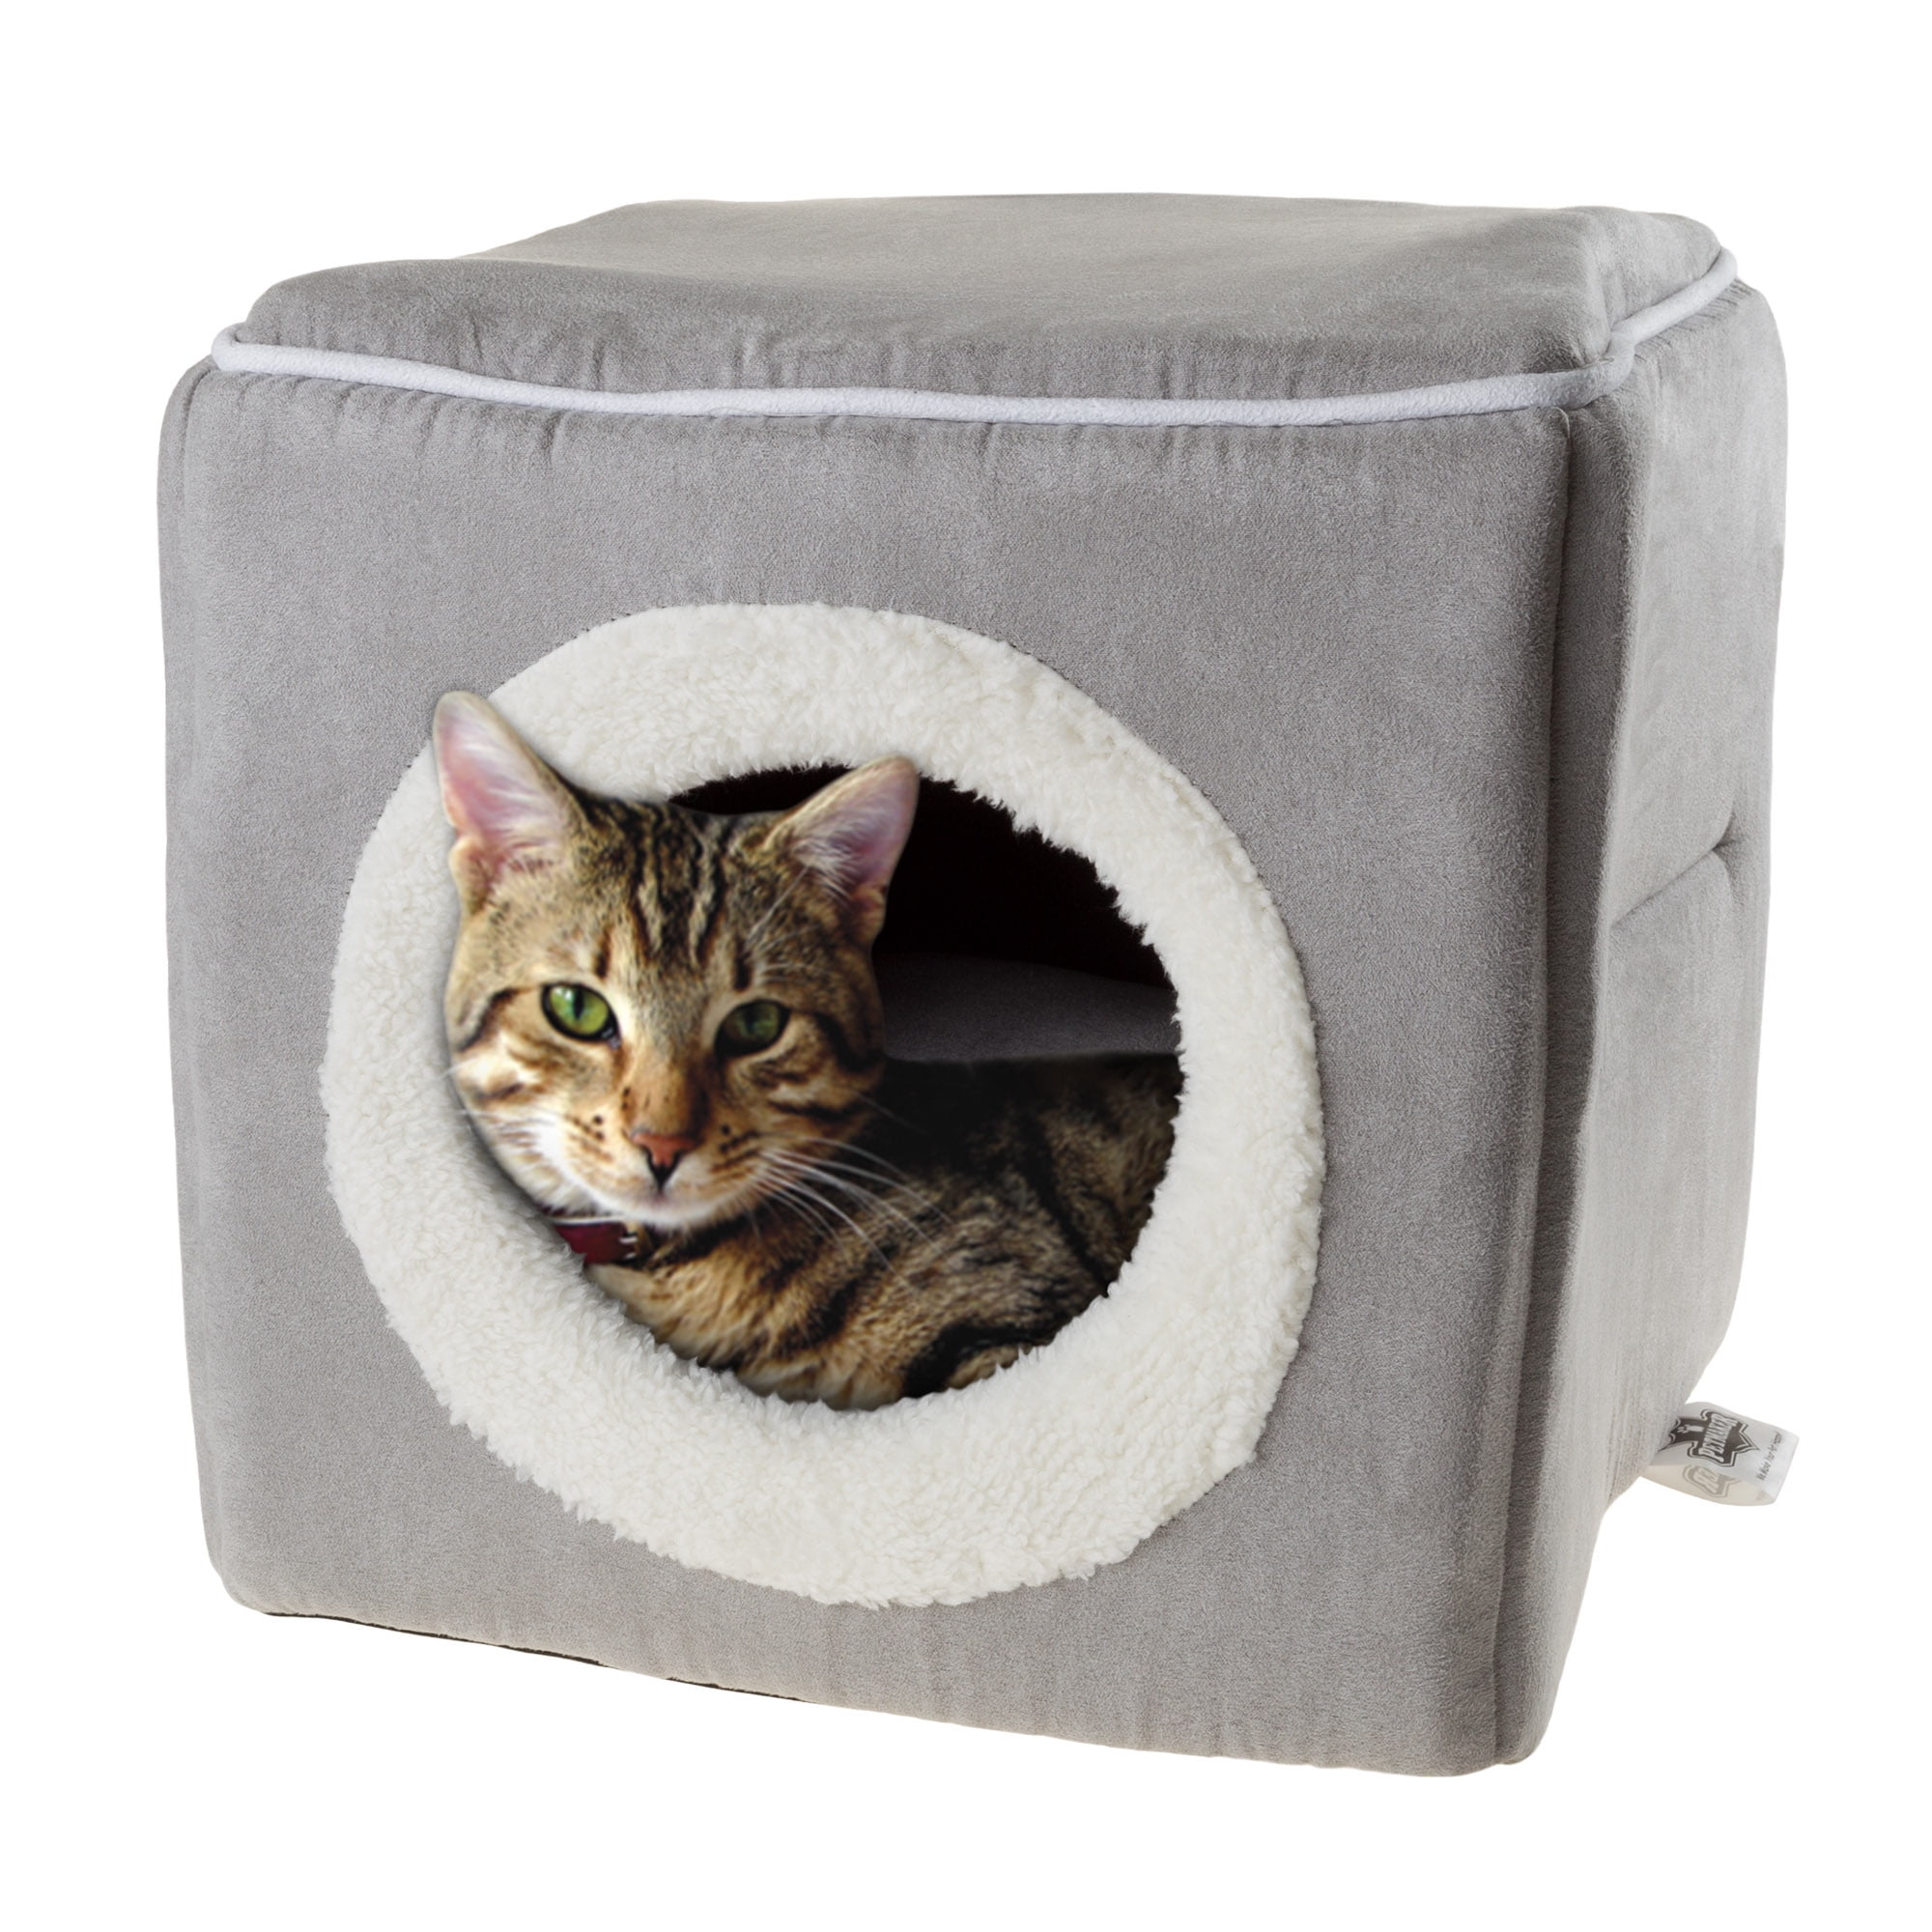 Cozy для кошек. Вставка в куб для кошки. Икеа куб с кошкой. United Pets Cat Cave.